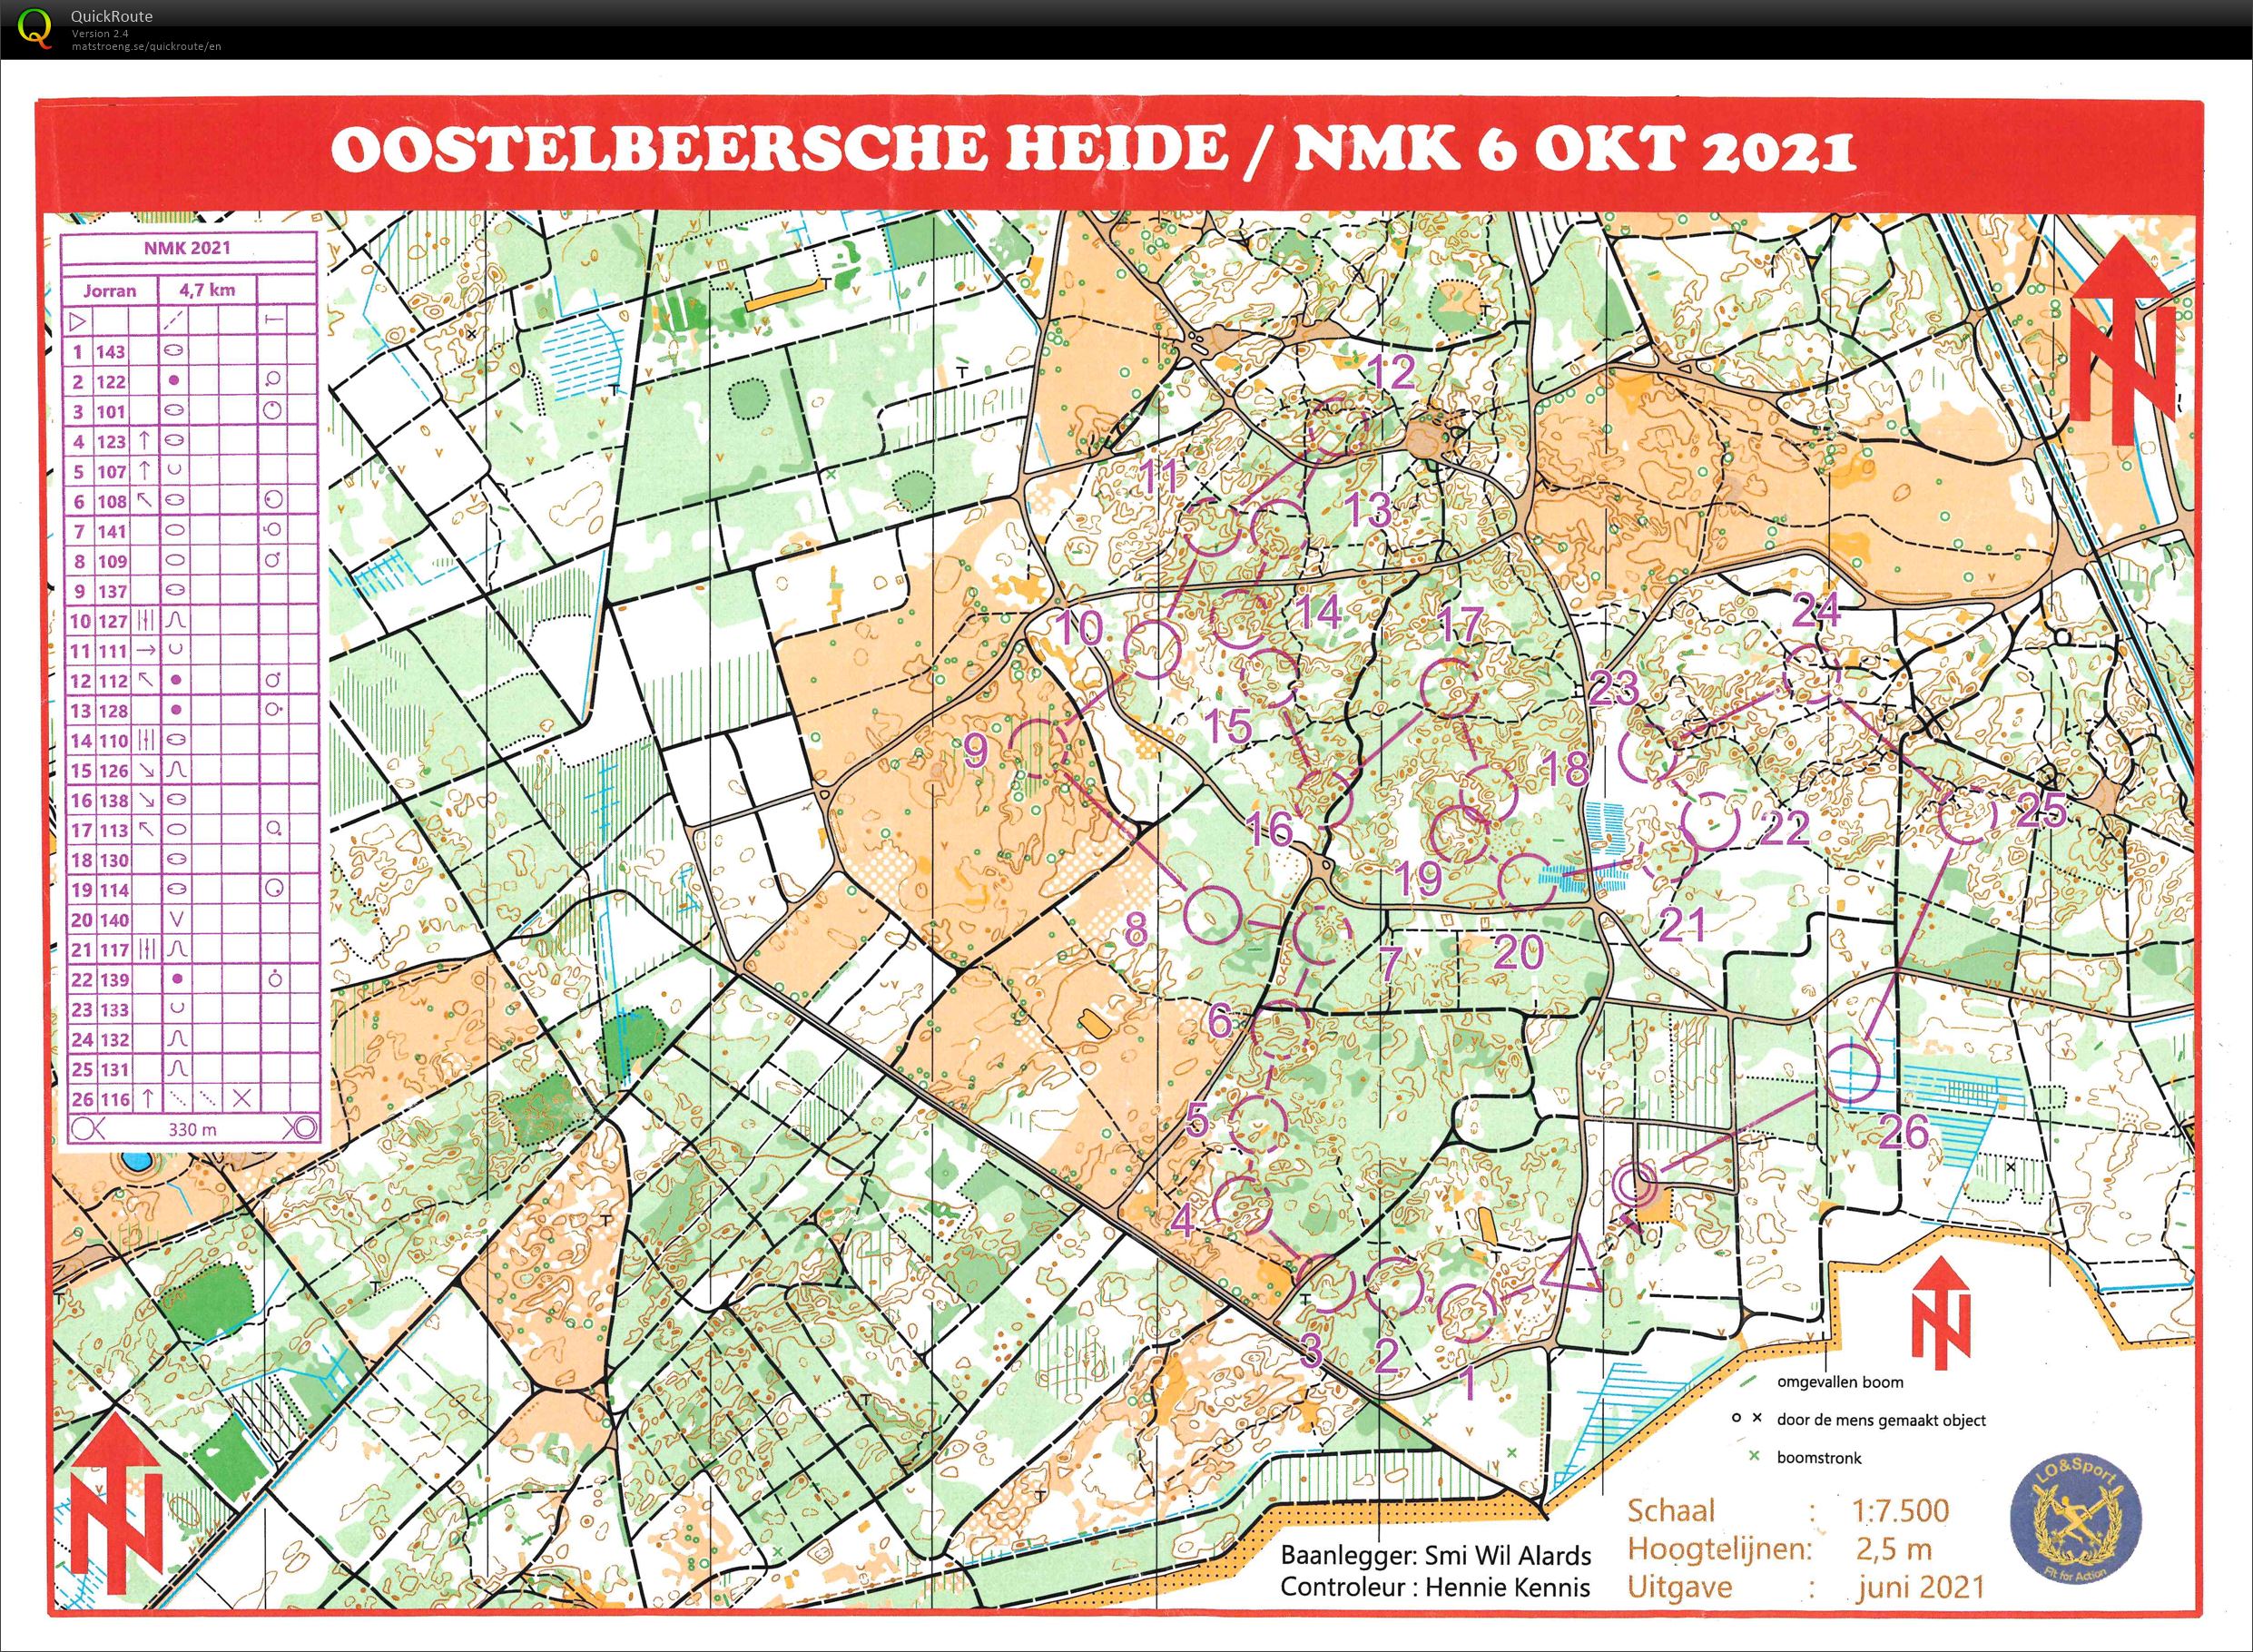 NMK Oostelbeersche Heide (06/10/2021)